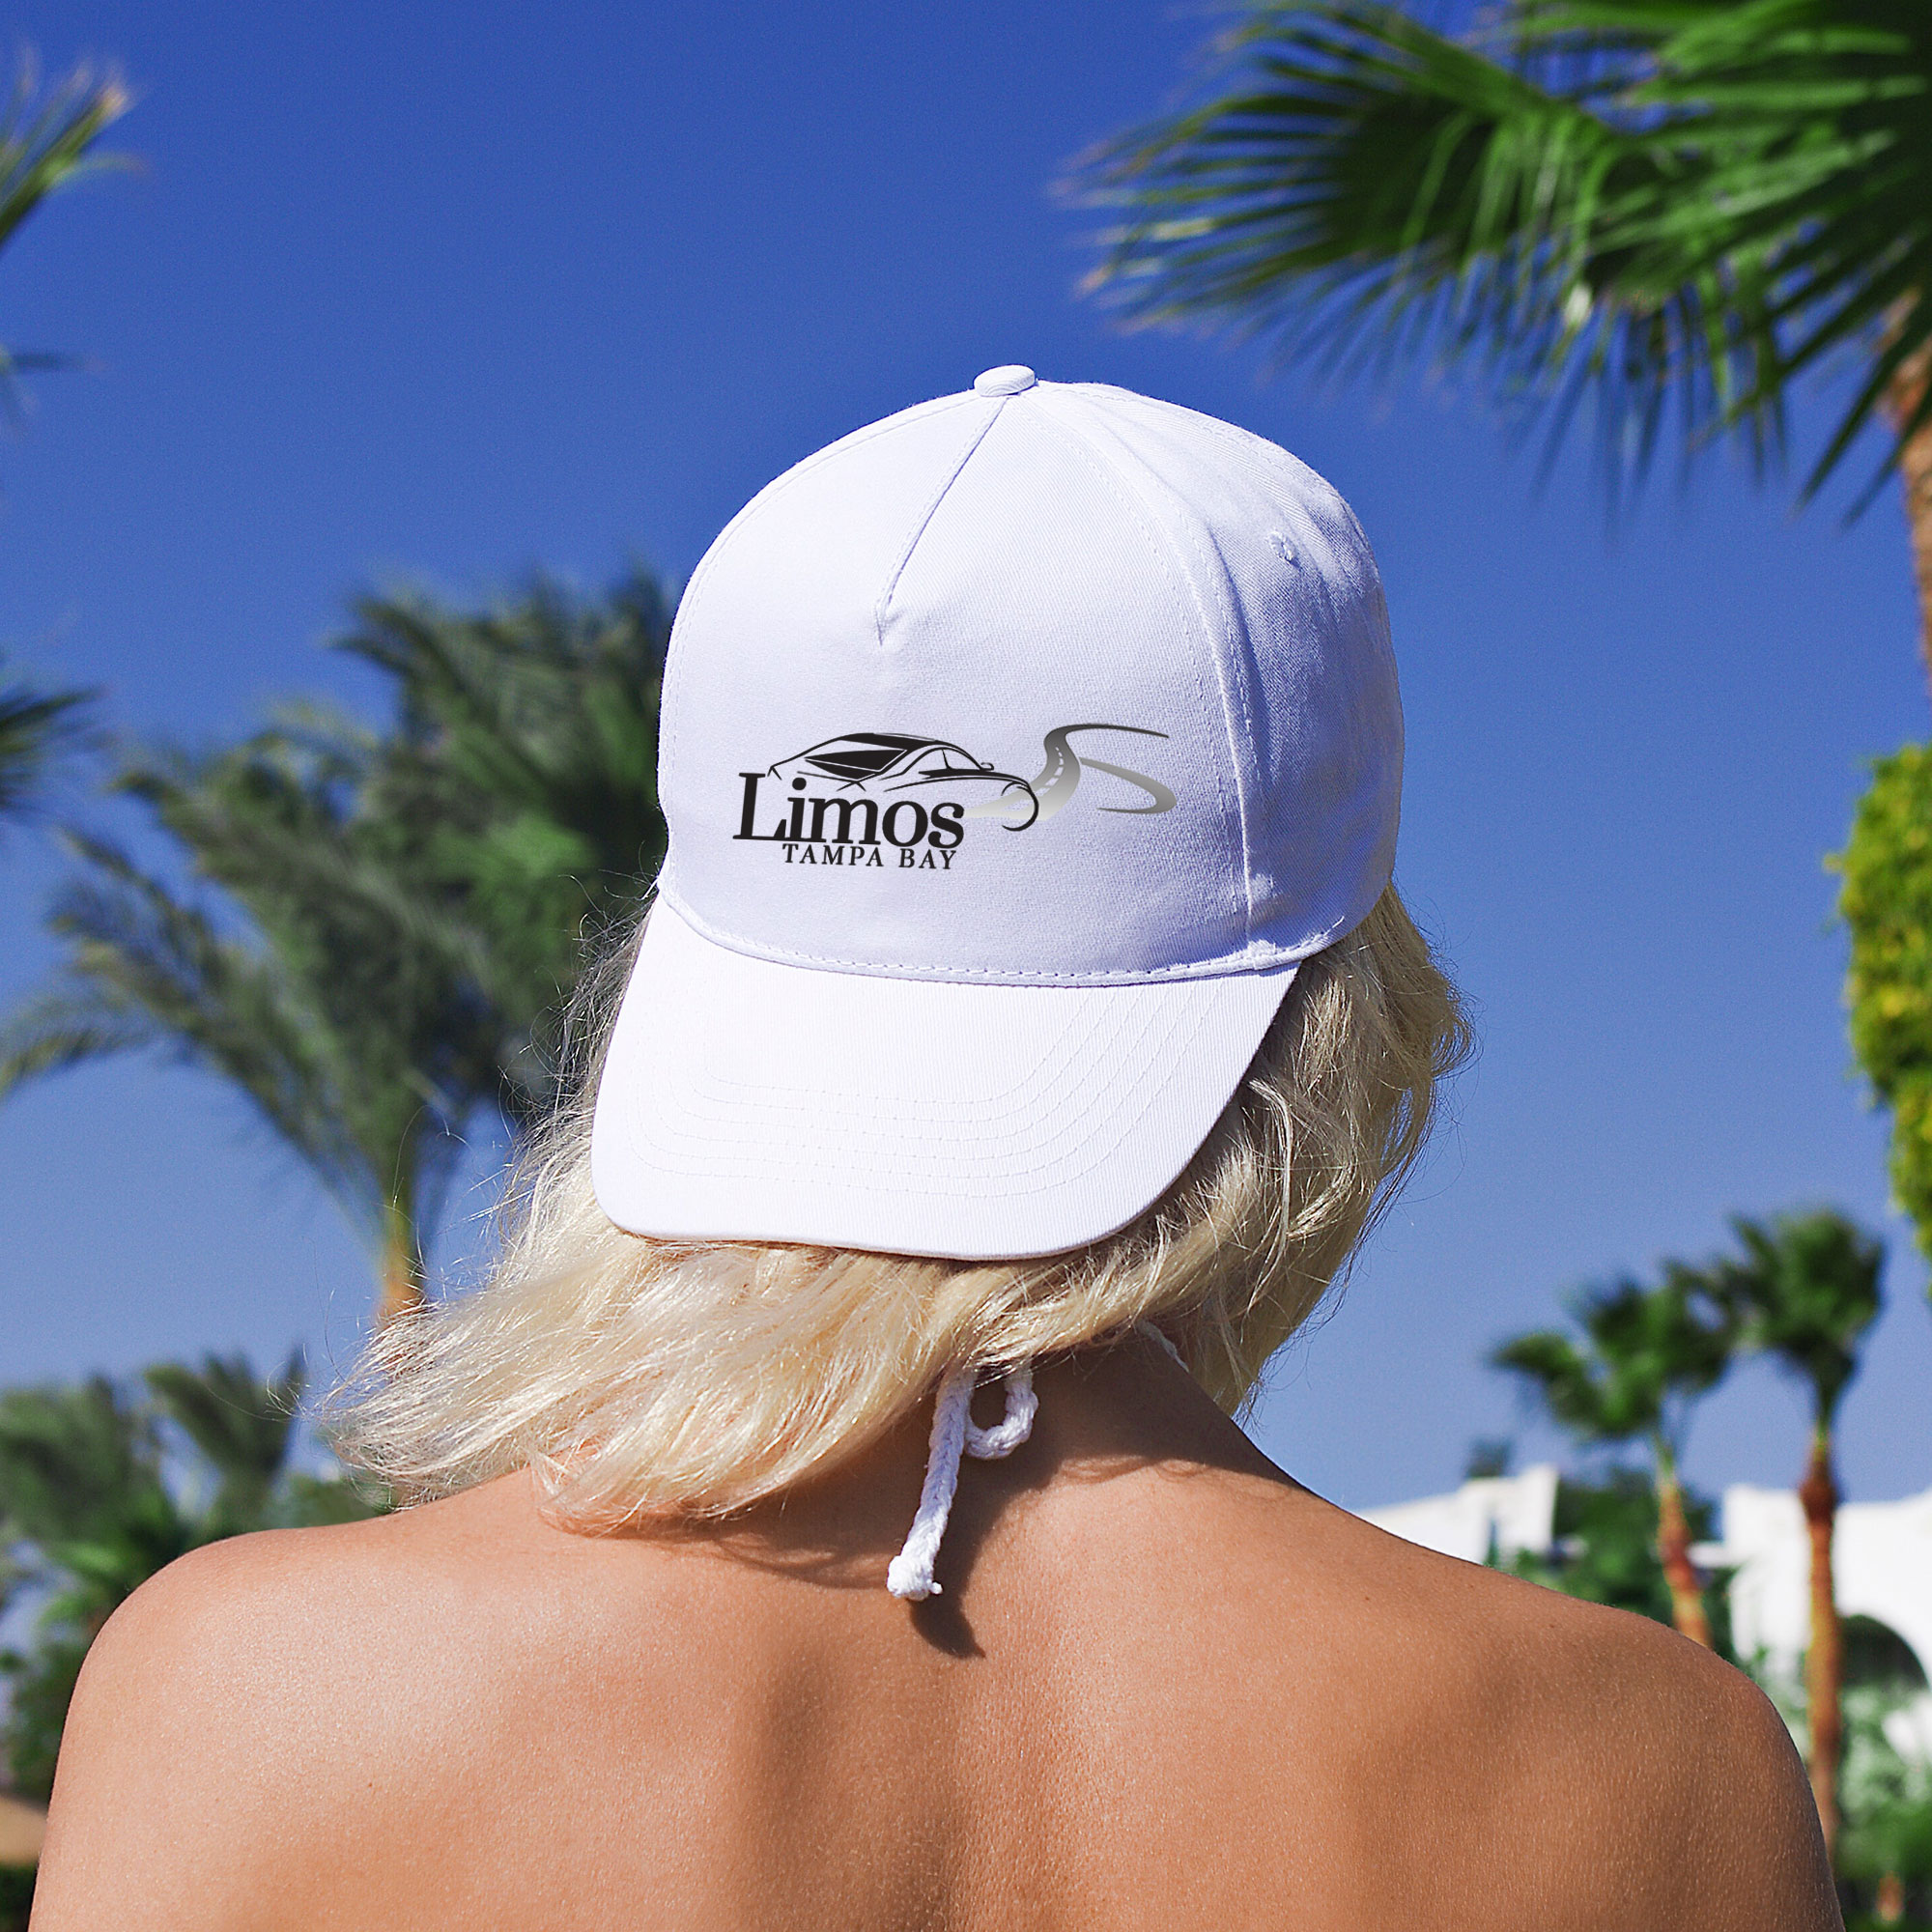 Limos Tampa Bay Logo Design